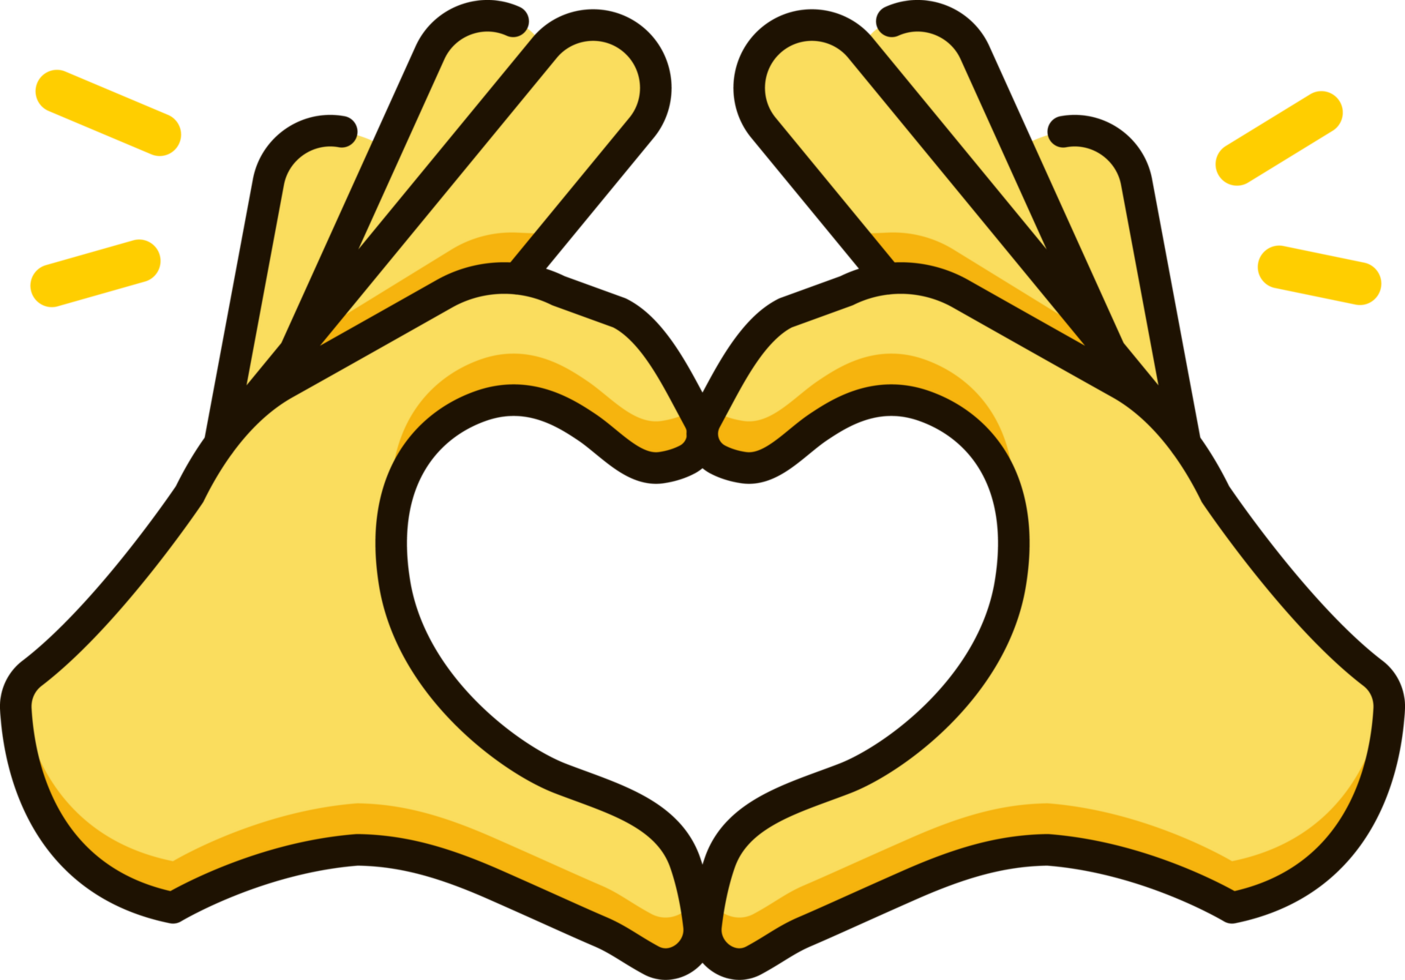 Heart hands icon emoji sticker png